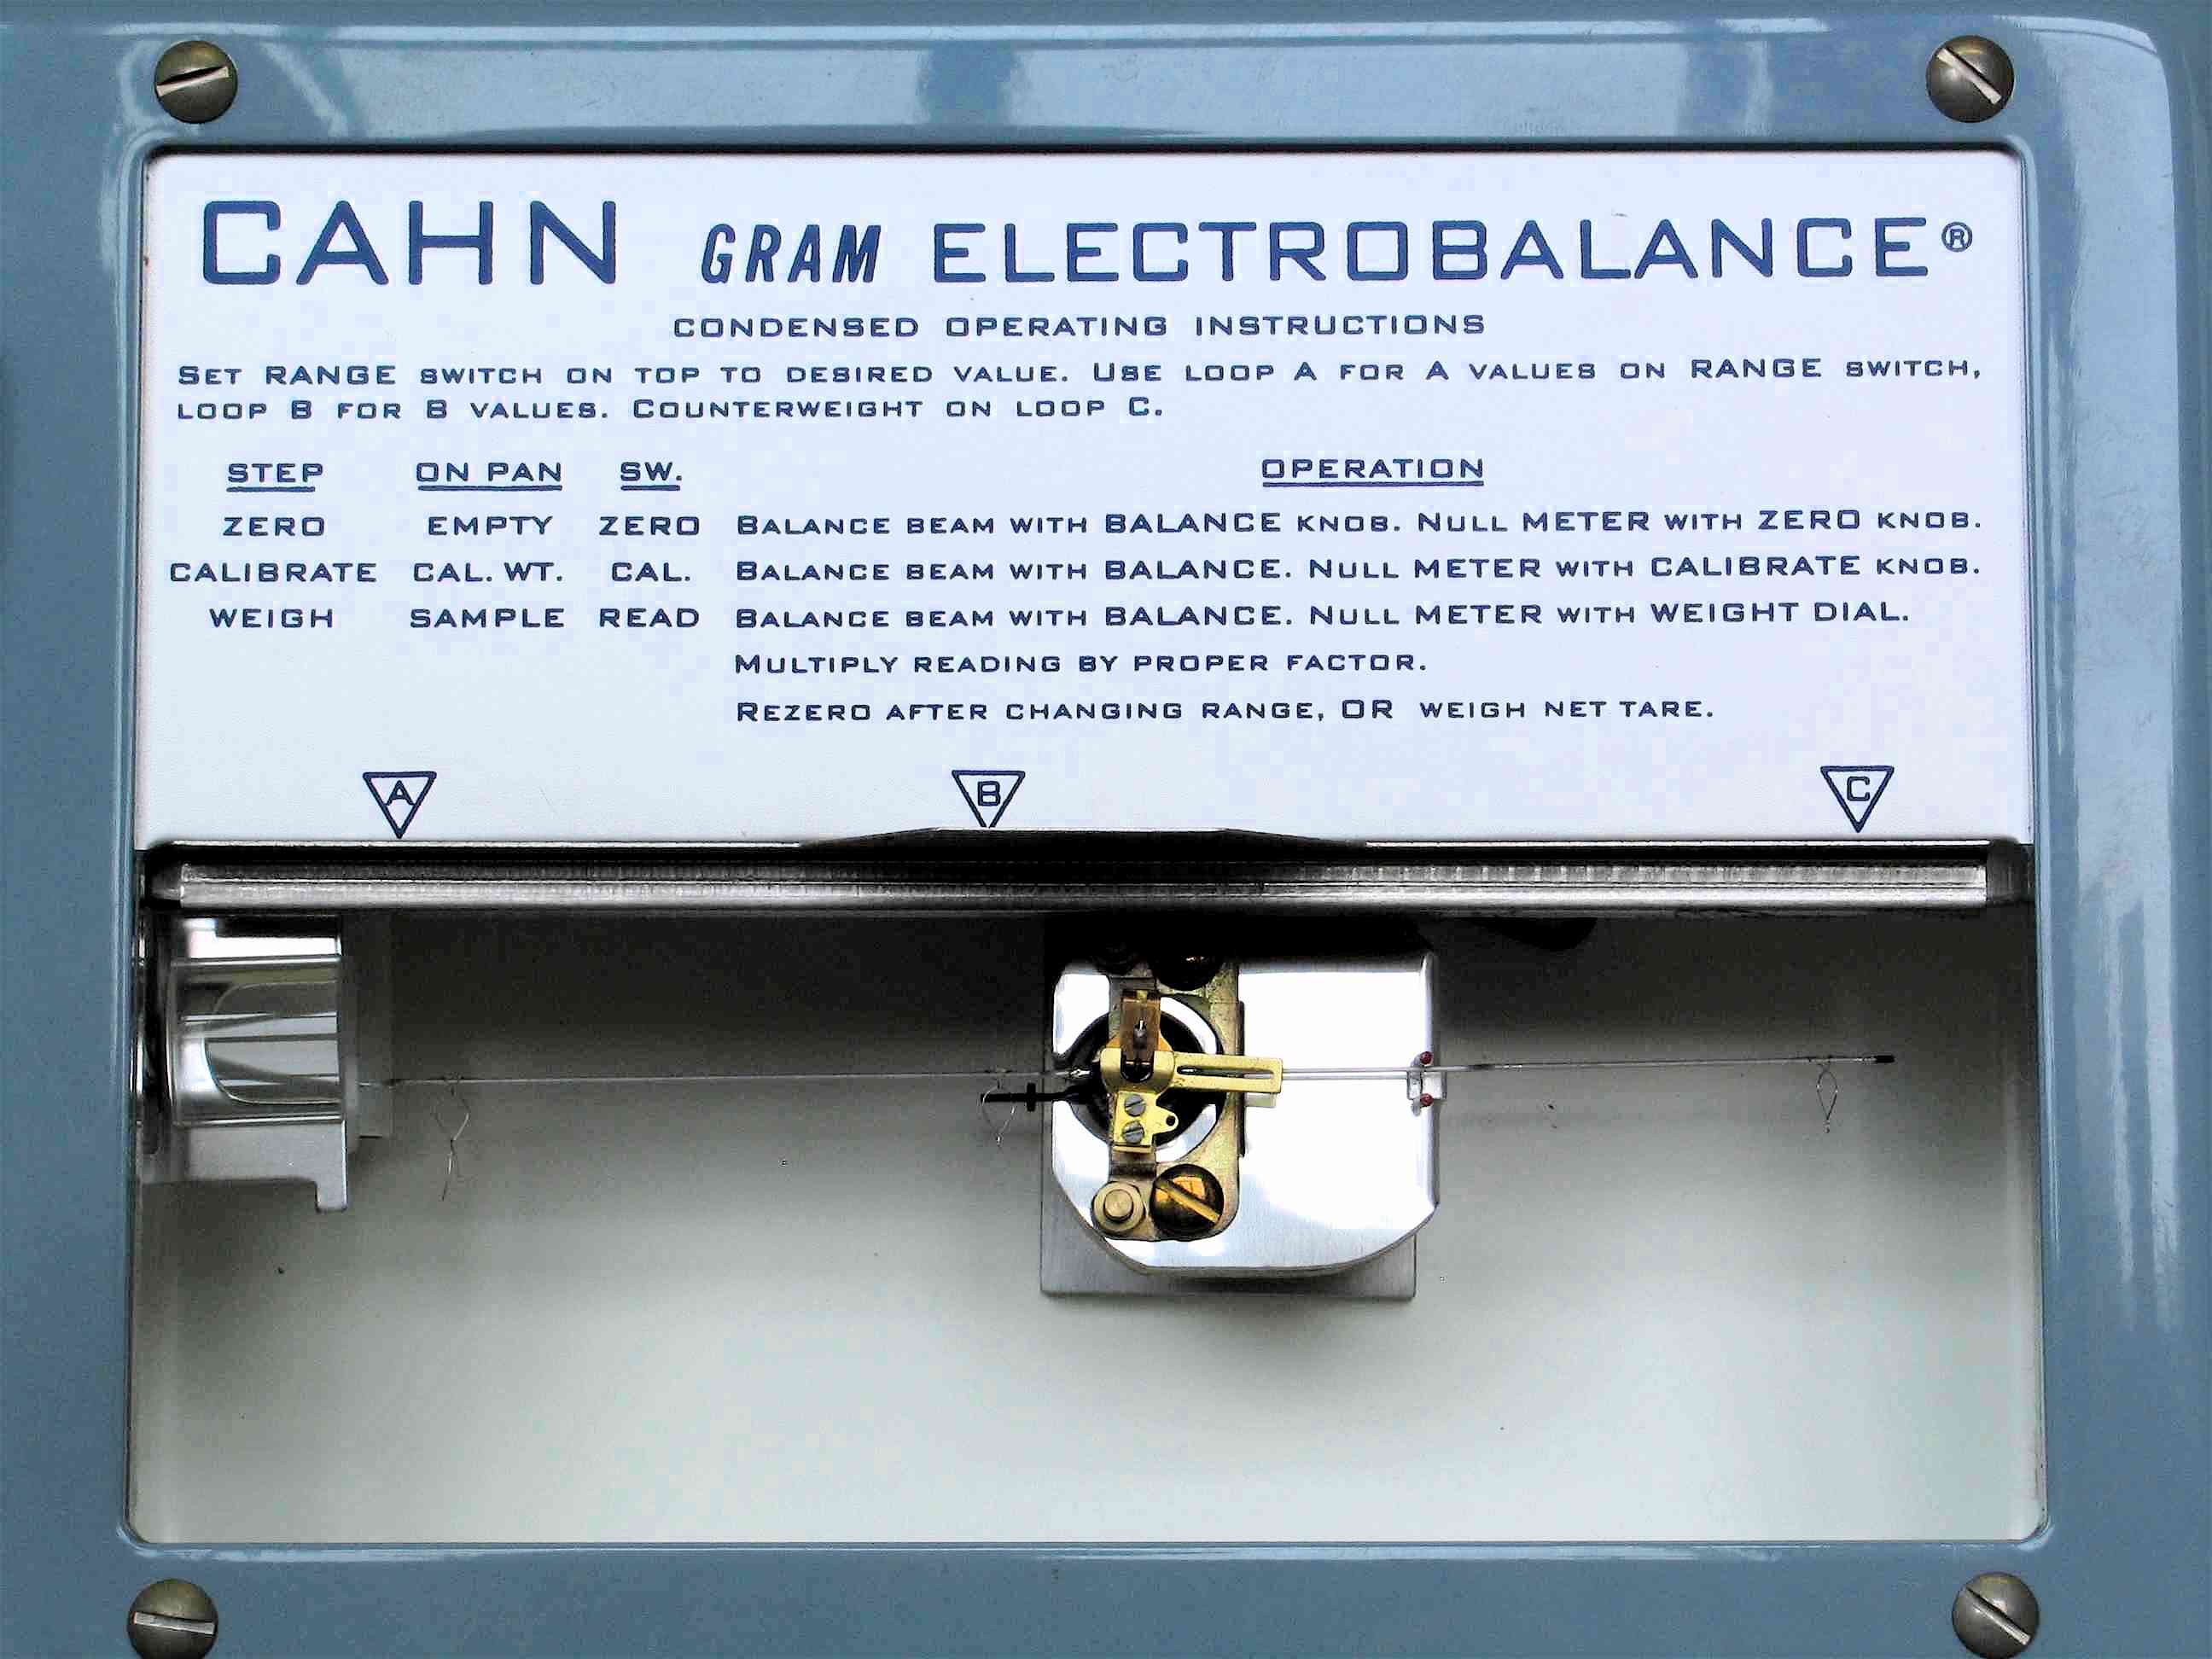 Balance de torsion électrique (1000 mg)
(“CAHN Gram Electrobalance Model G”)